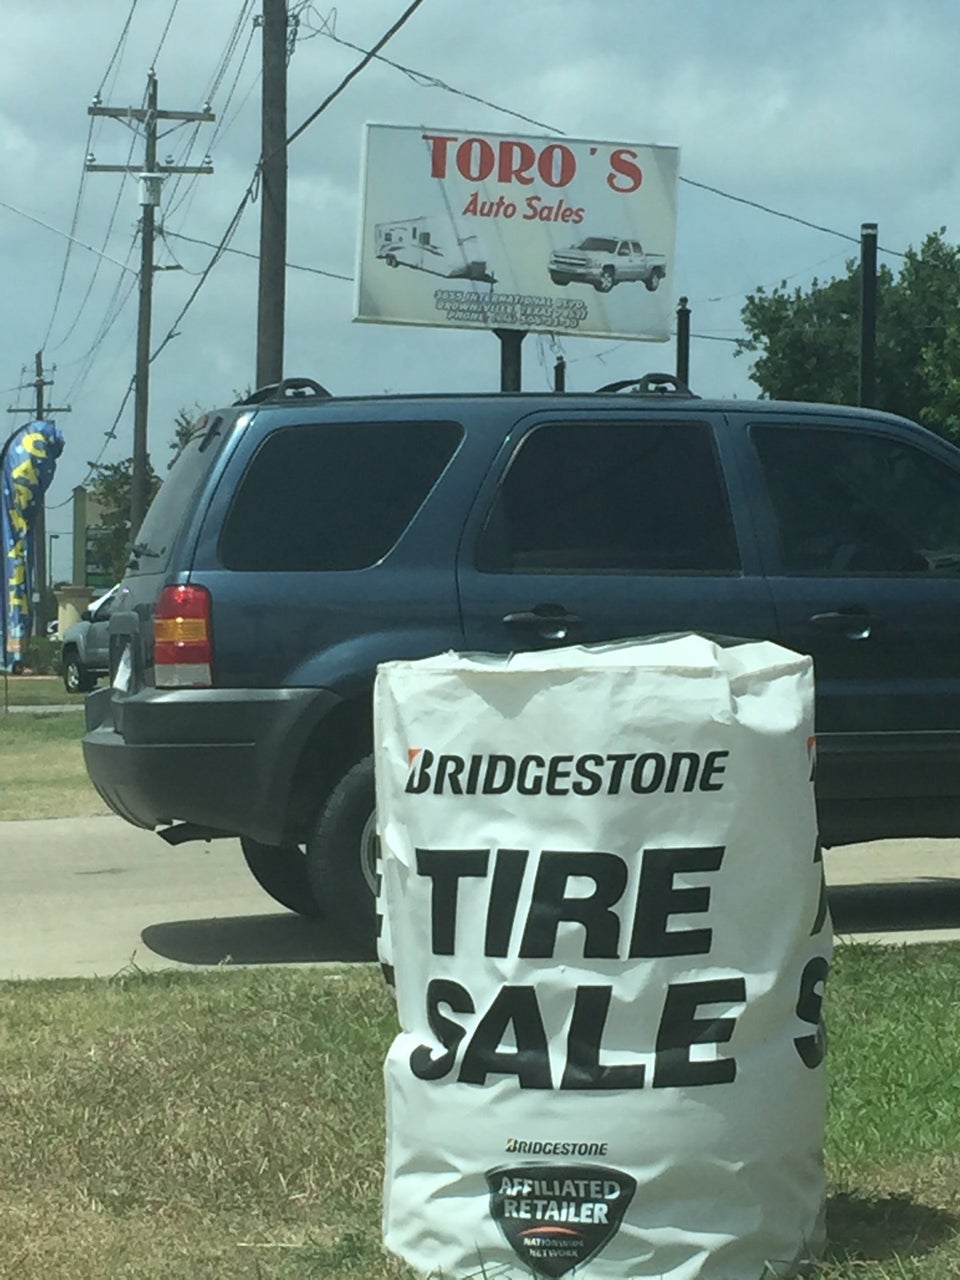 Duran's Auto Sales